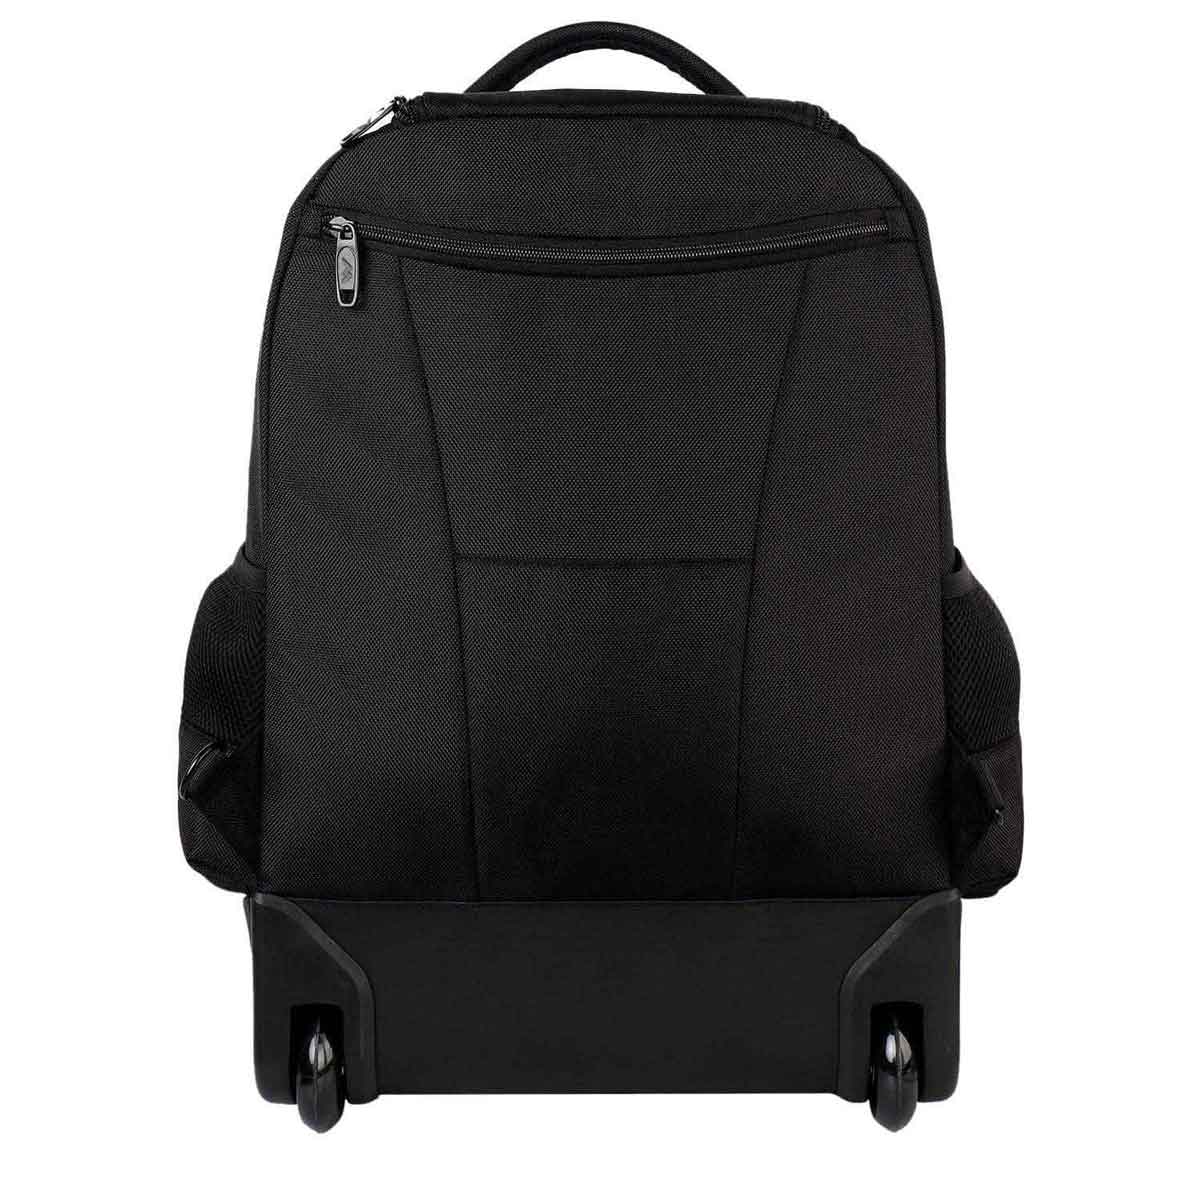 Matein Waterproof Drybag Backpack